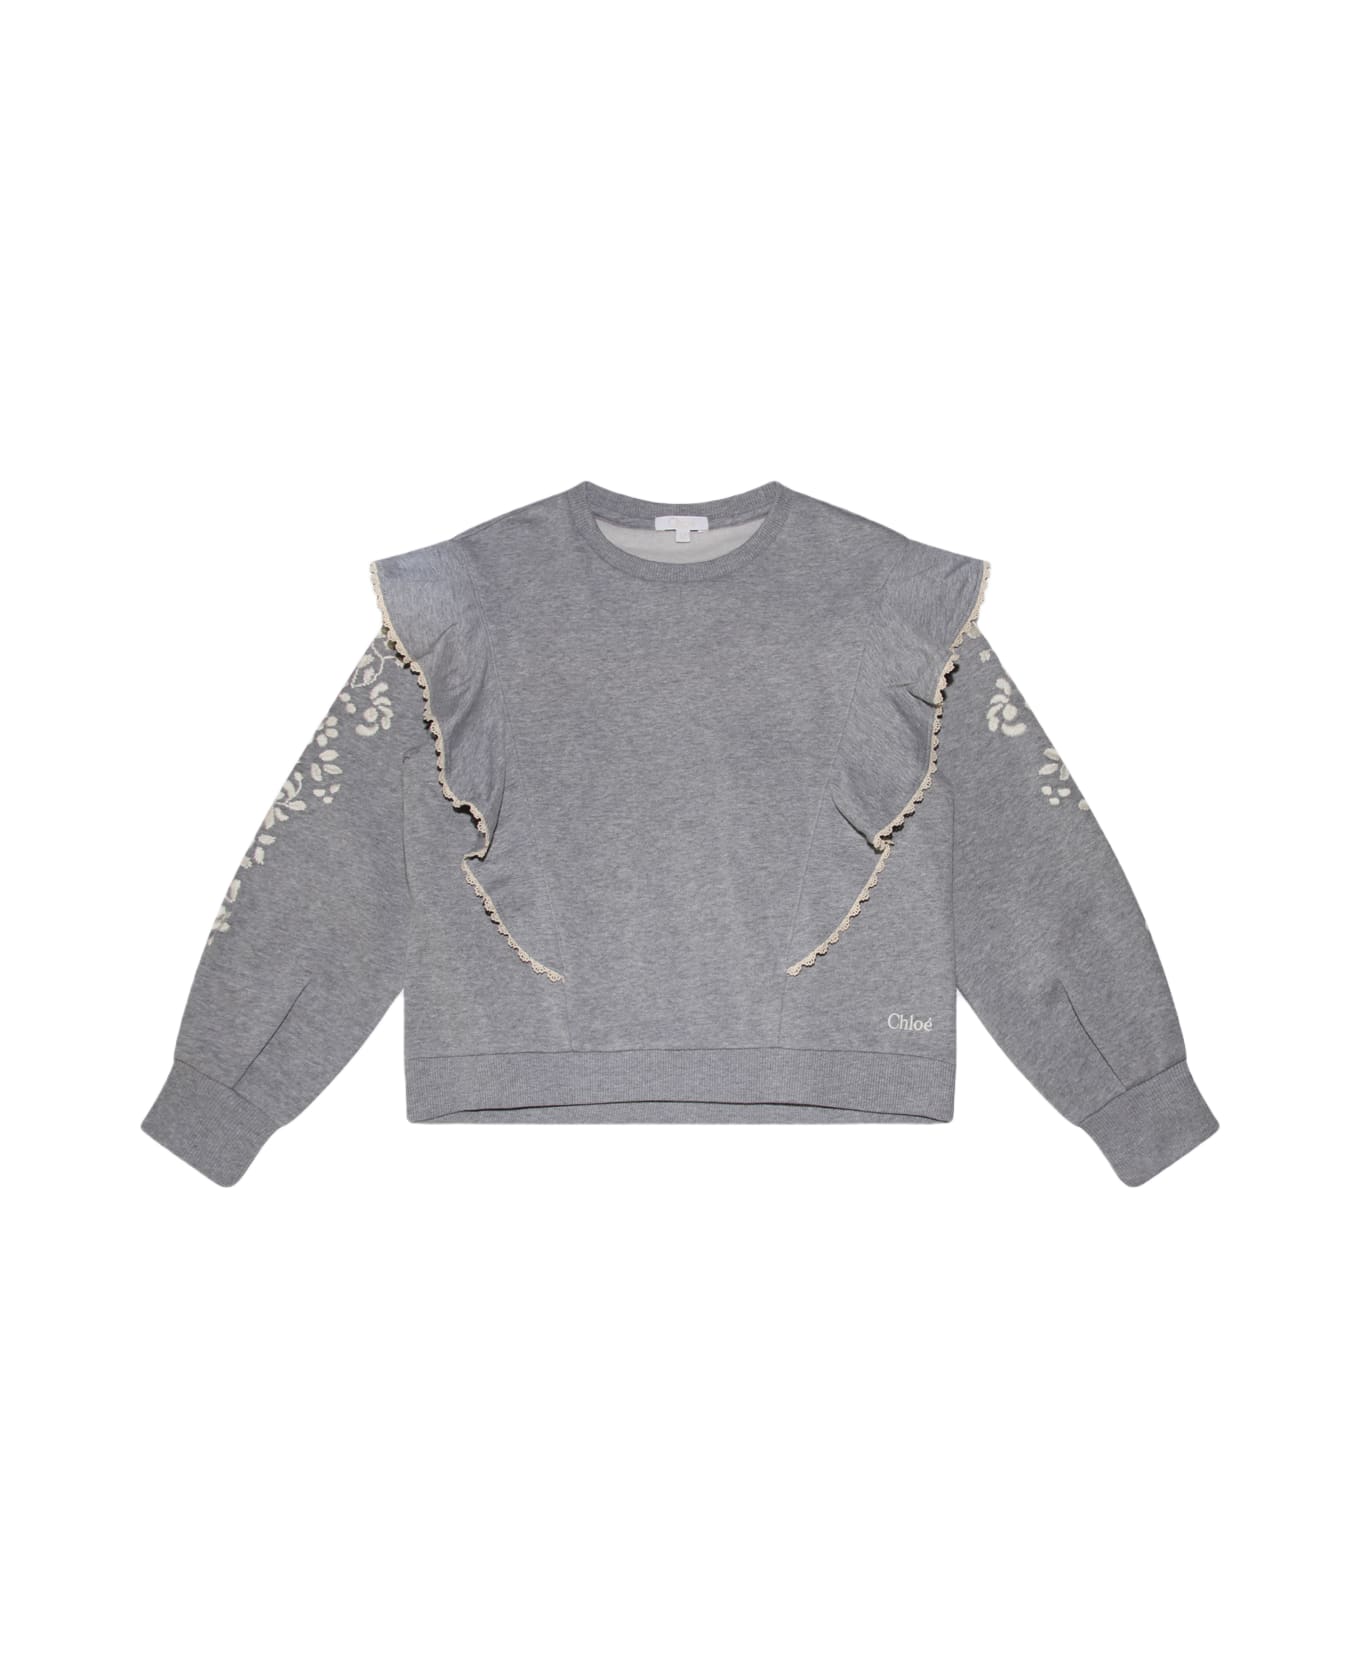 Chloé Grey Cotton Sweatshirt - Grey